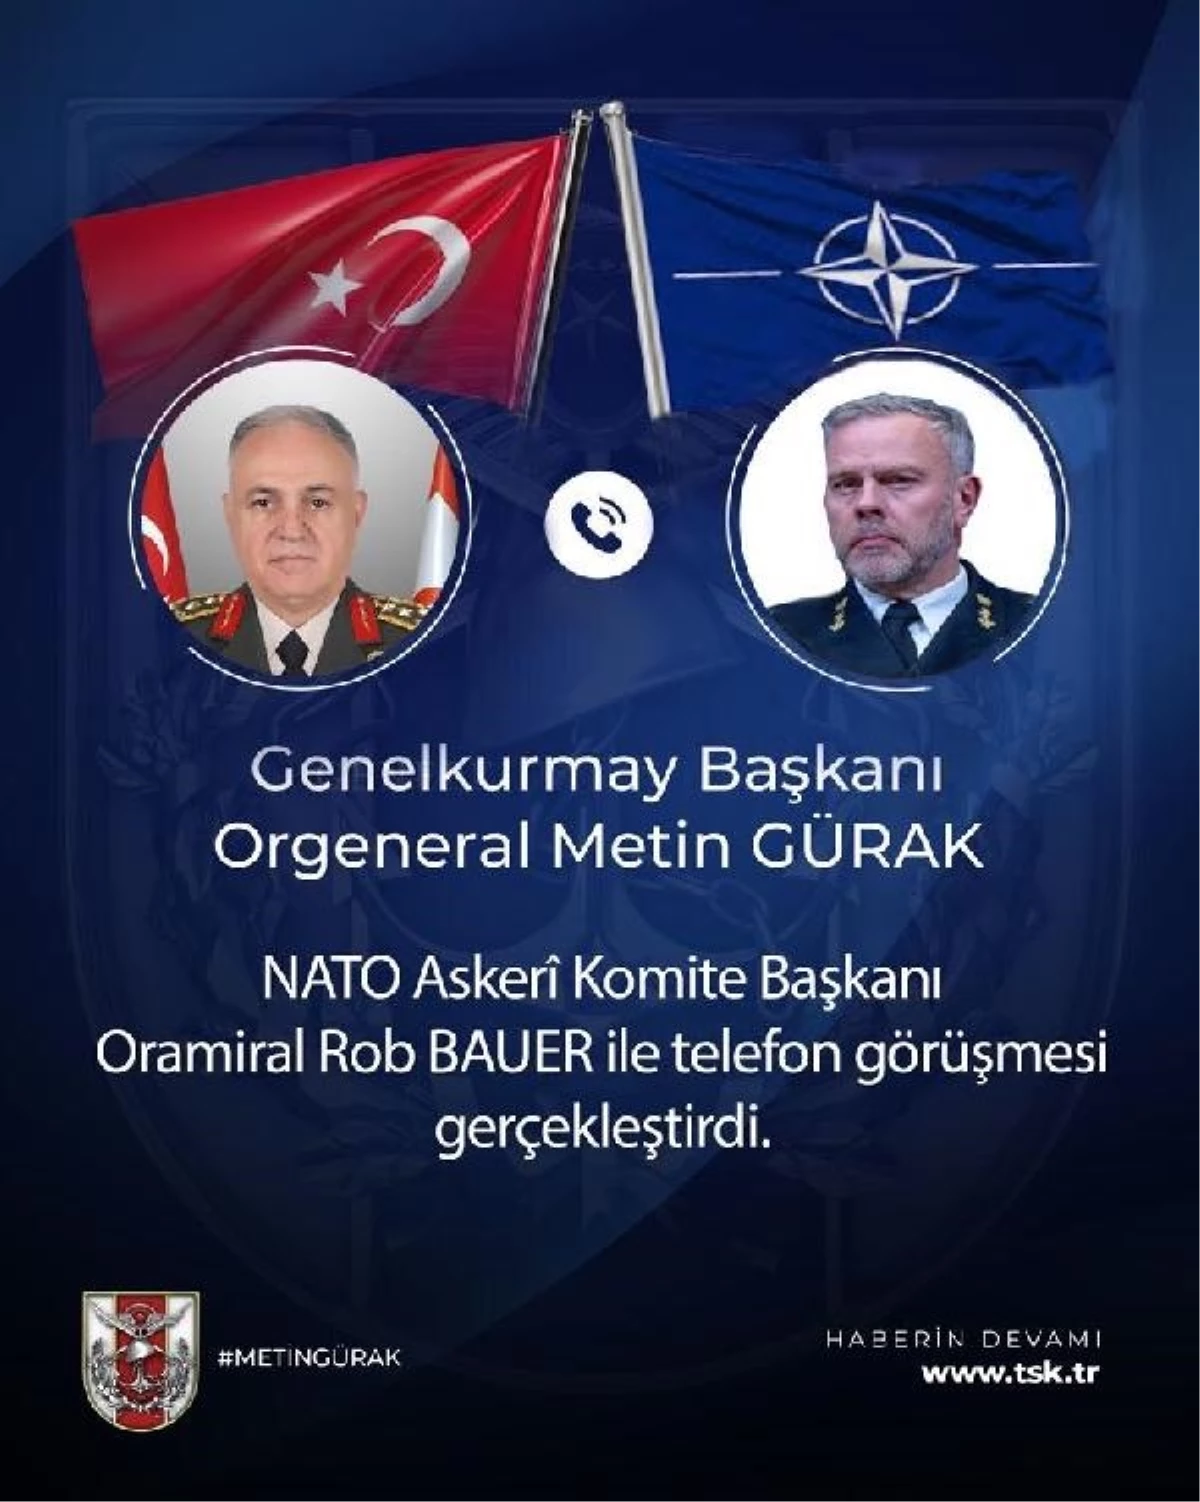 Genelkurmay Başkanı Orgeneral Gürak, NATO Askeri Komite Başkanı Oramiral Bauer ile görüştü